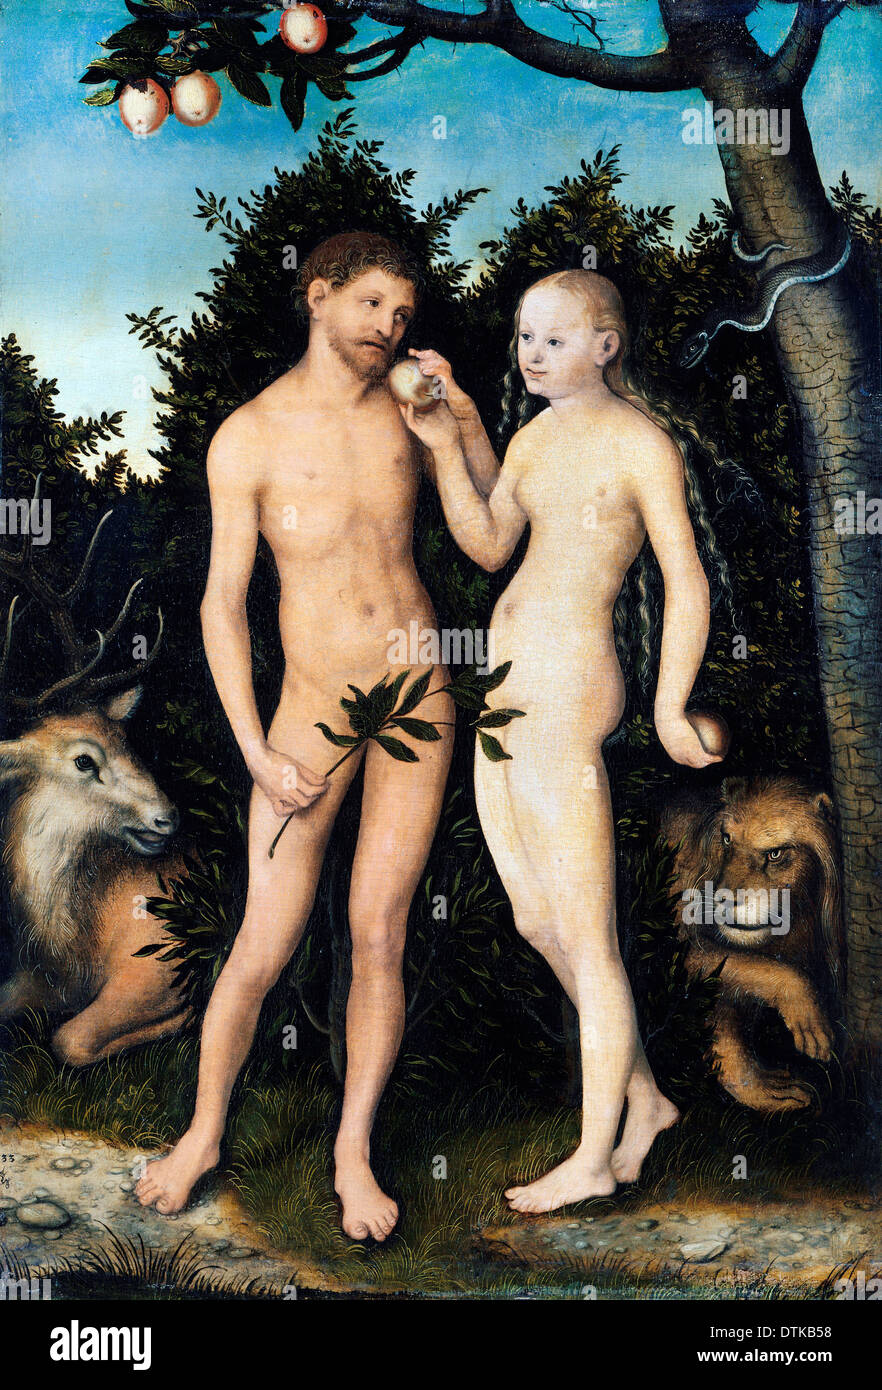 Lucas Cranach der ältere, Adam und Eva im Paradies (The Fall) 1533 Öl auf Holz. Gemäldegalerie, Berlin, Deutschland. Stockfoto